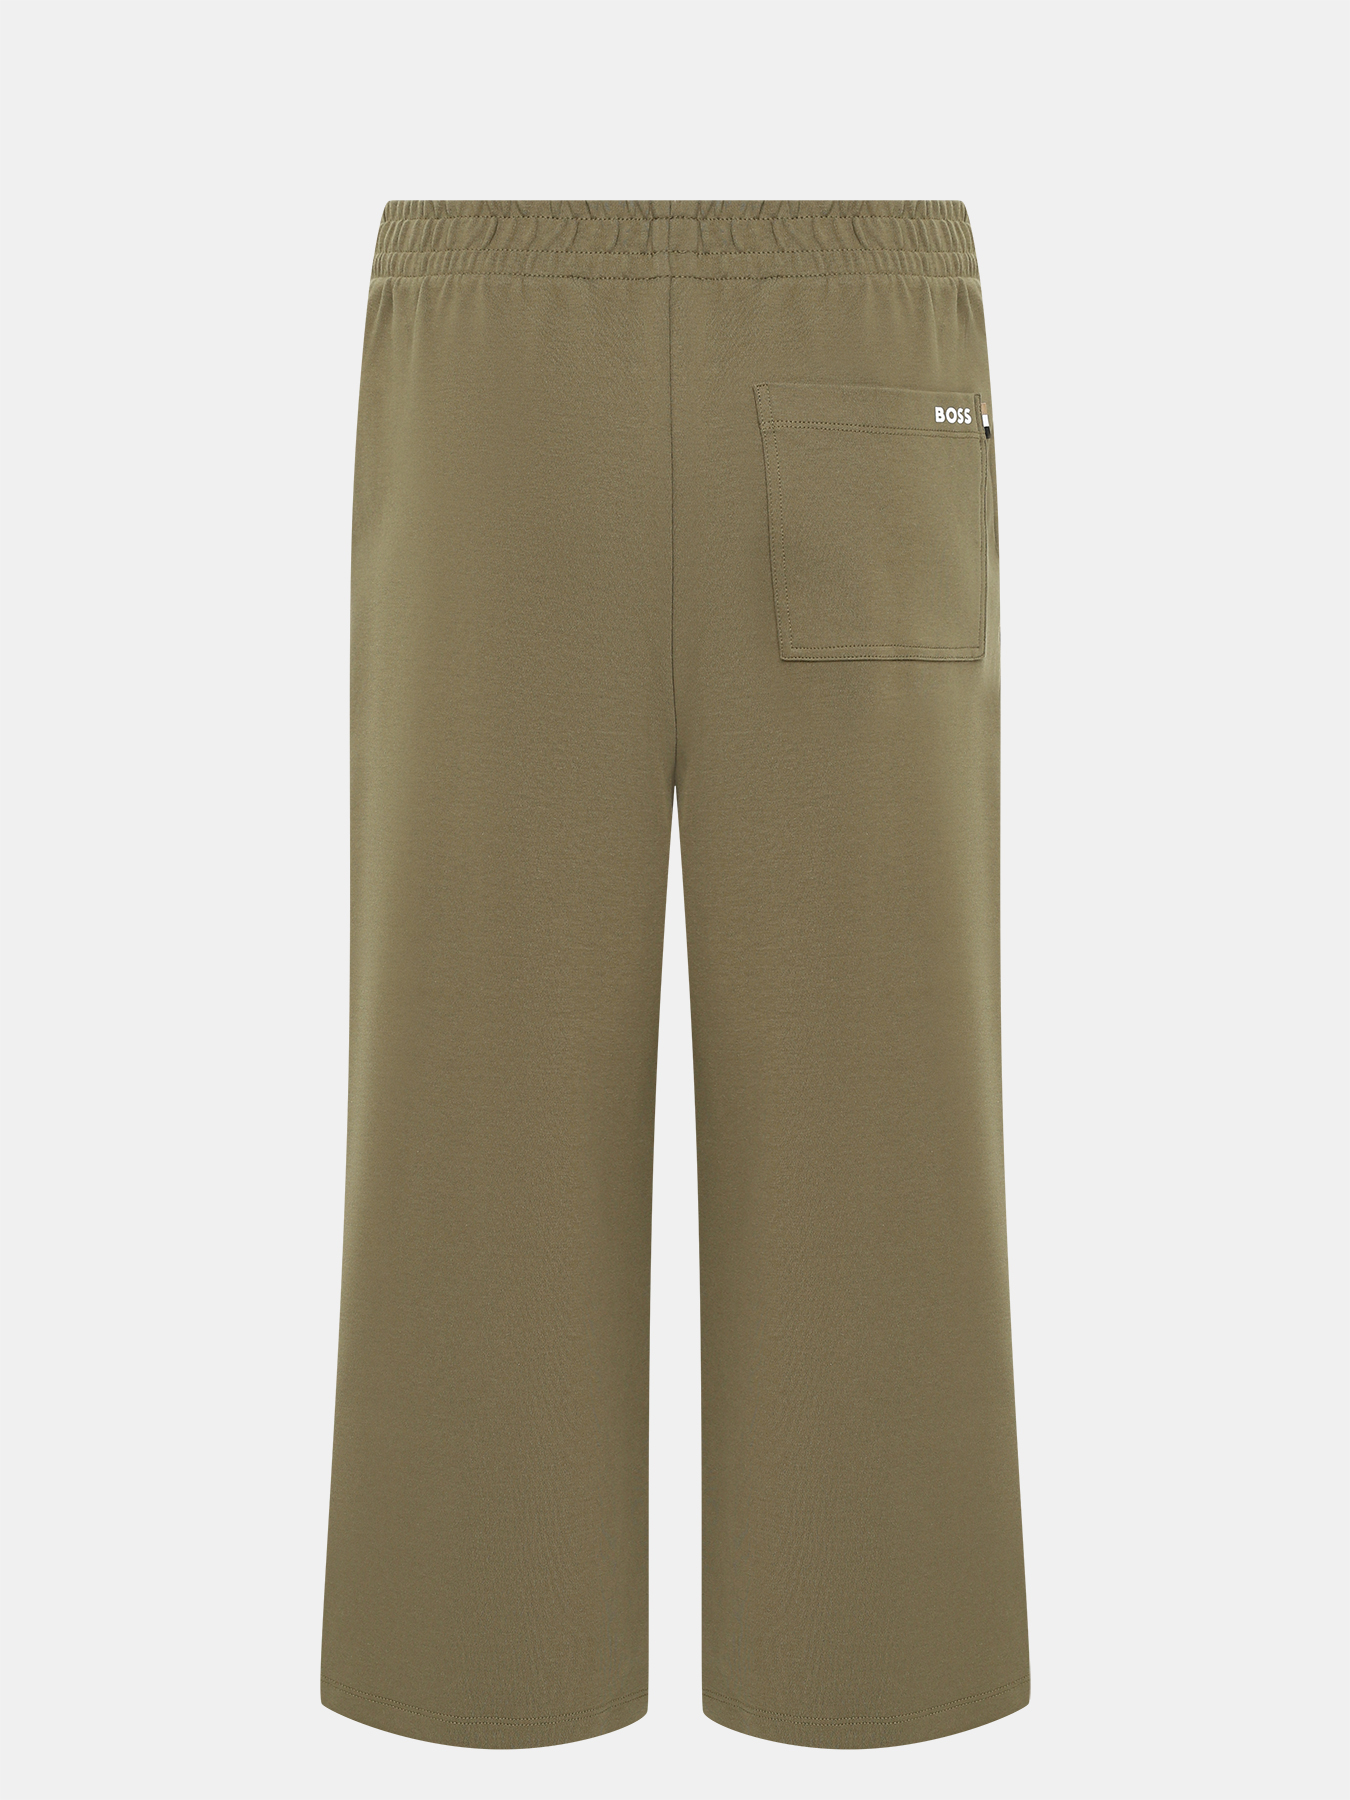 Спортивные брюки Enatea BOSS 414132-042, цвет хаки, размер 42-44 - фото 2